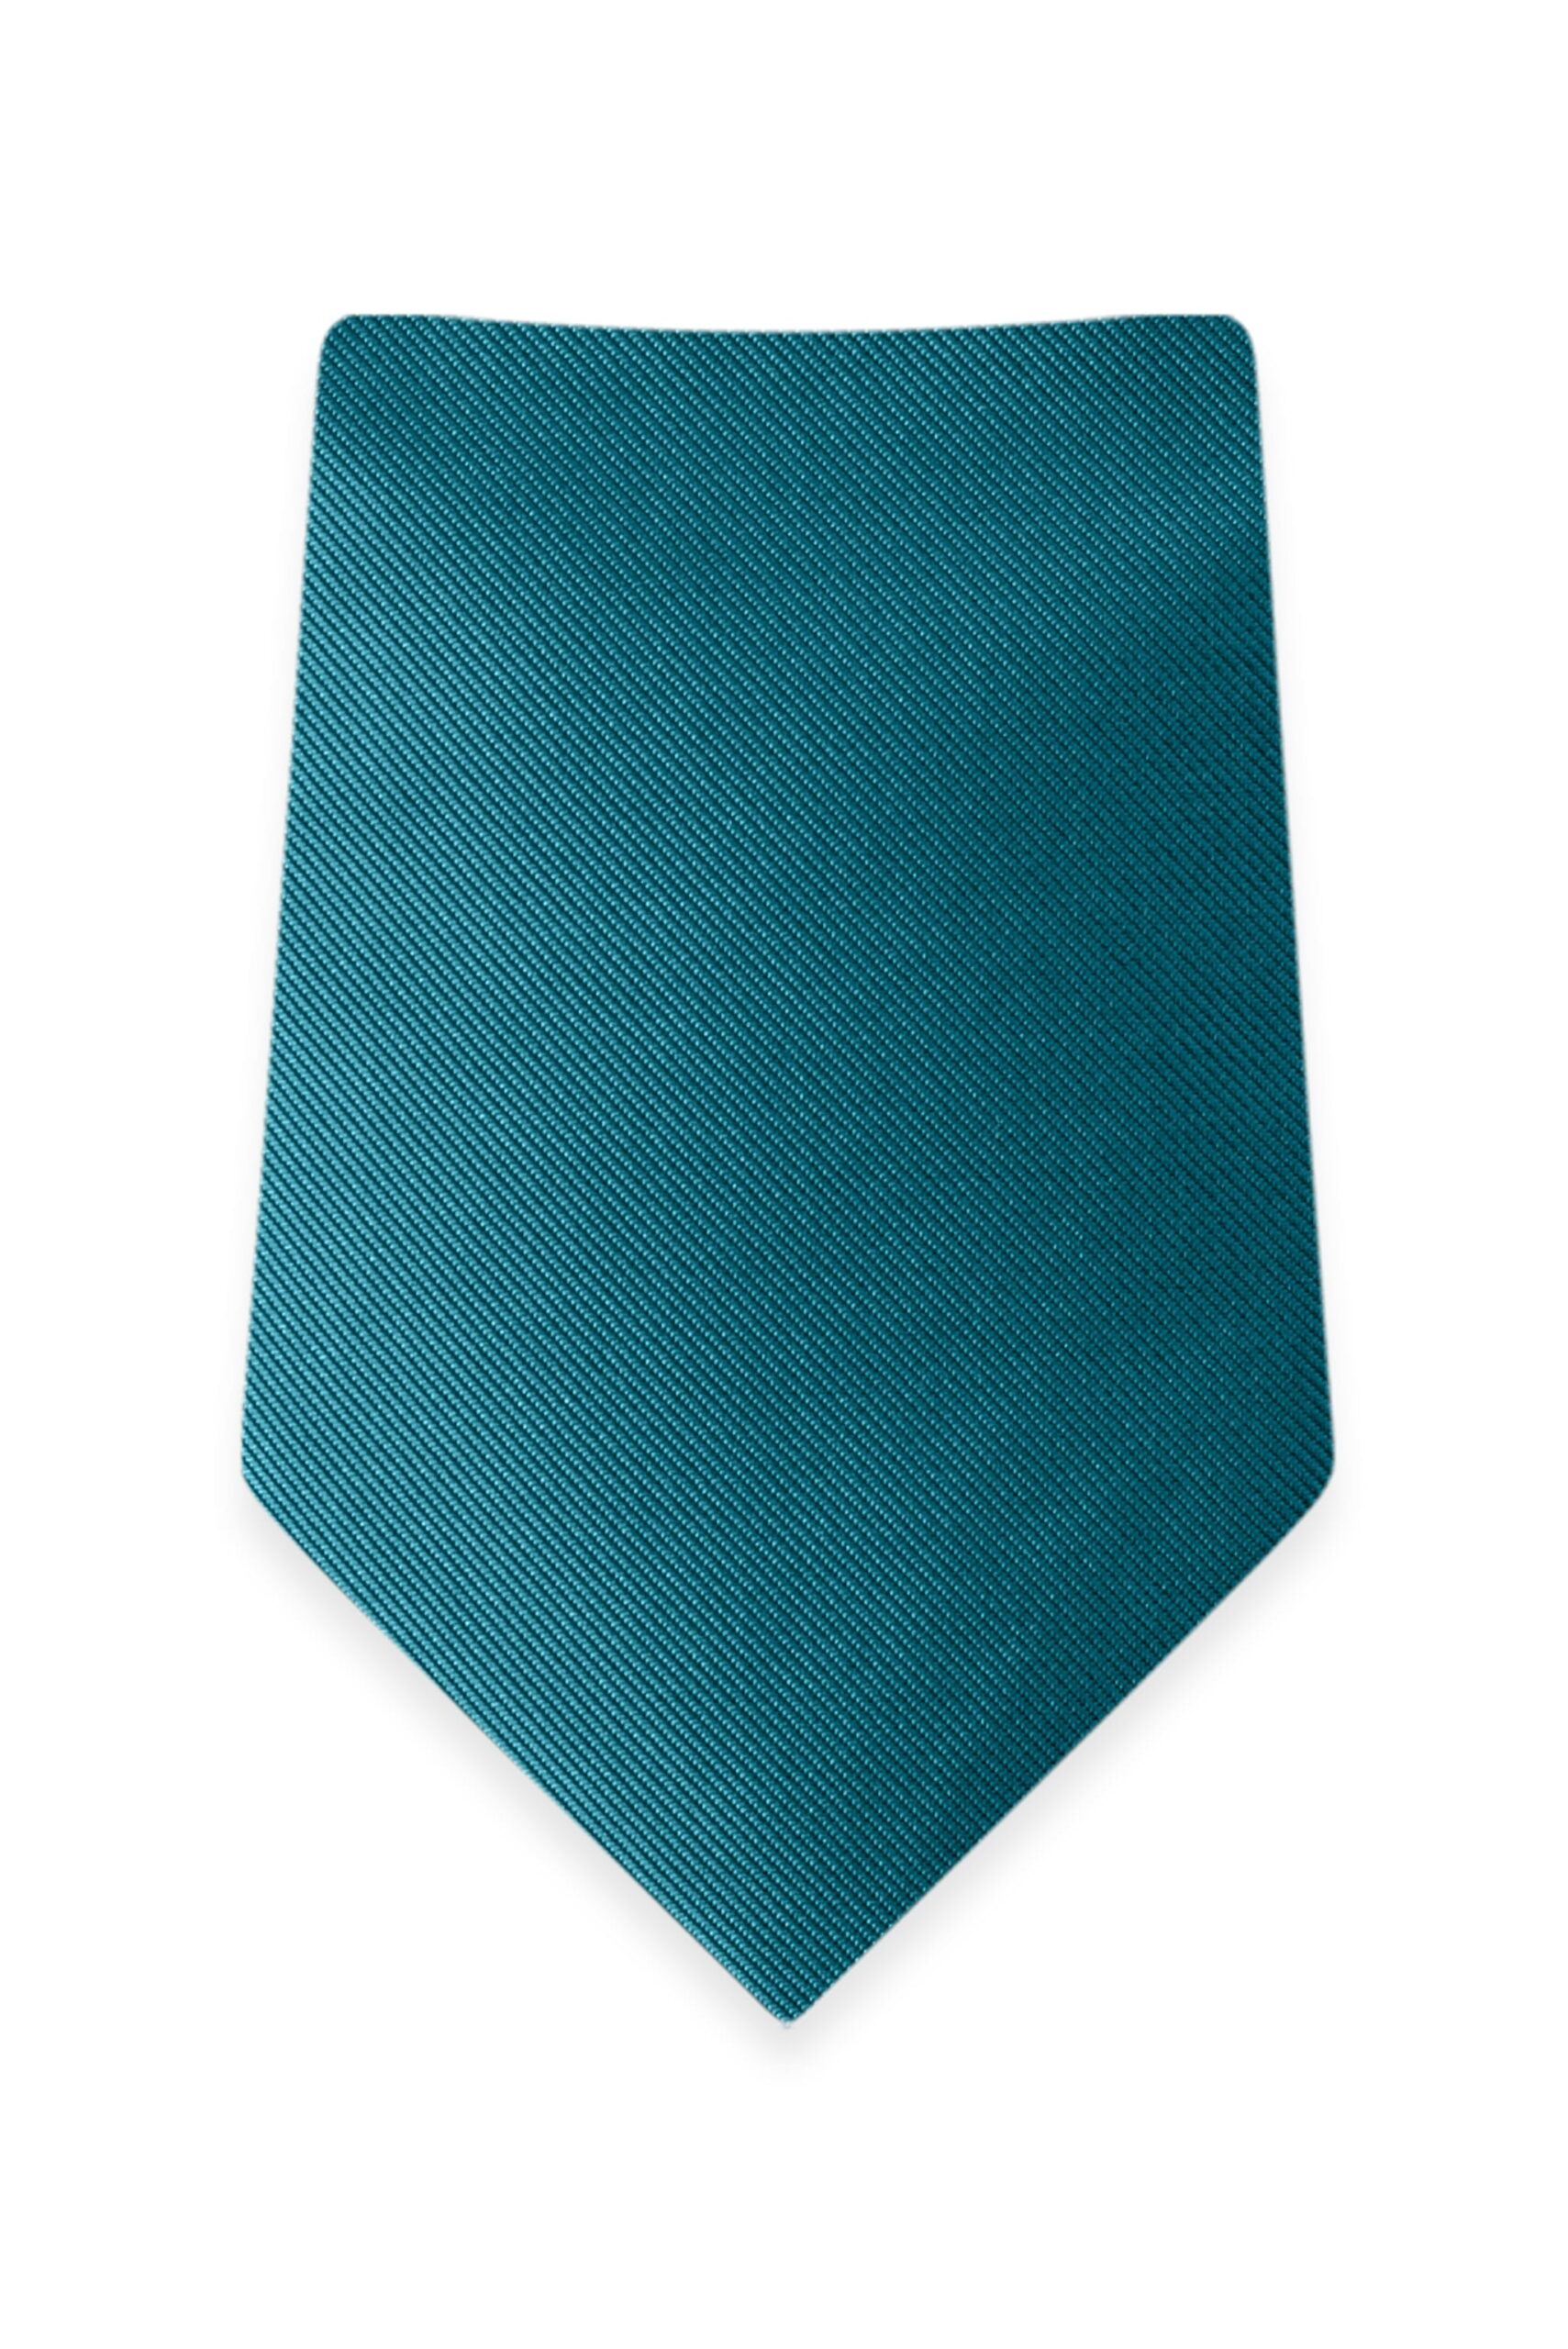 Solid Teal Self-Tie Windsor Tie 1